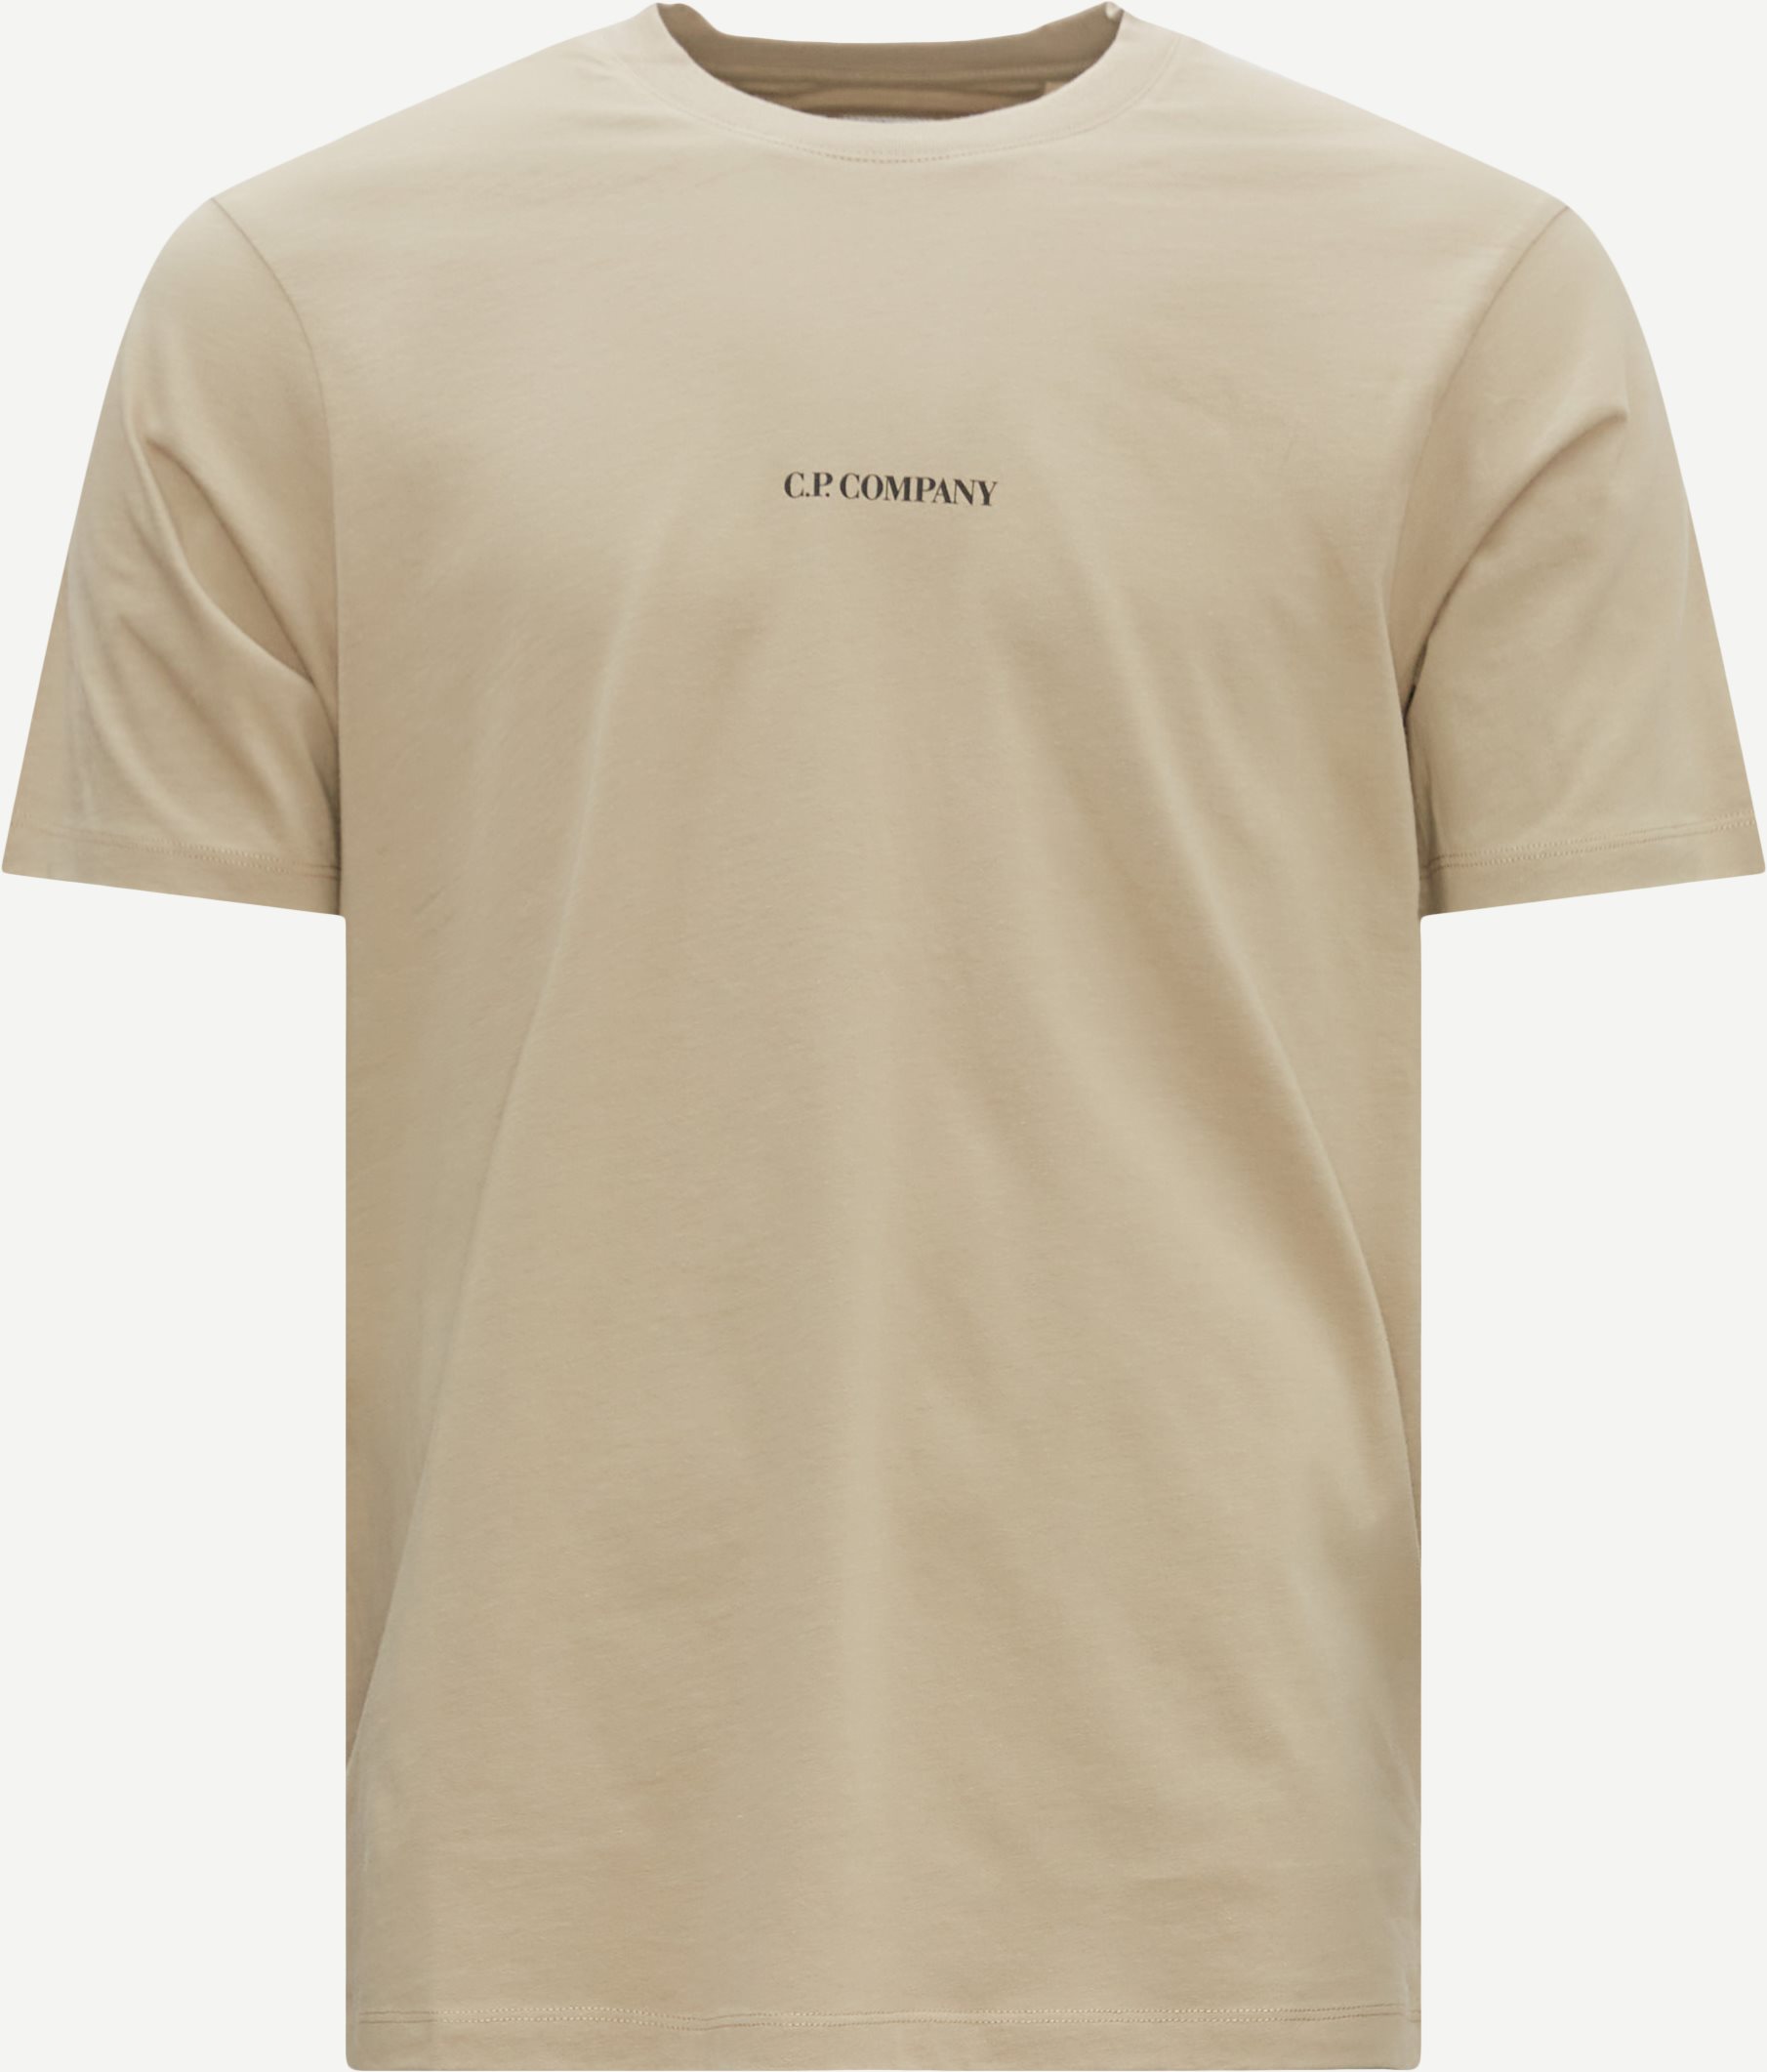 C.P. Company T-shirts TS190A 6011W Sand